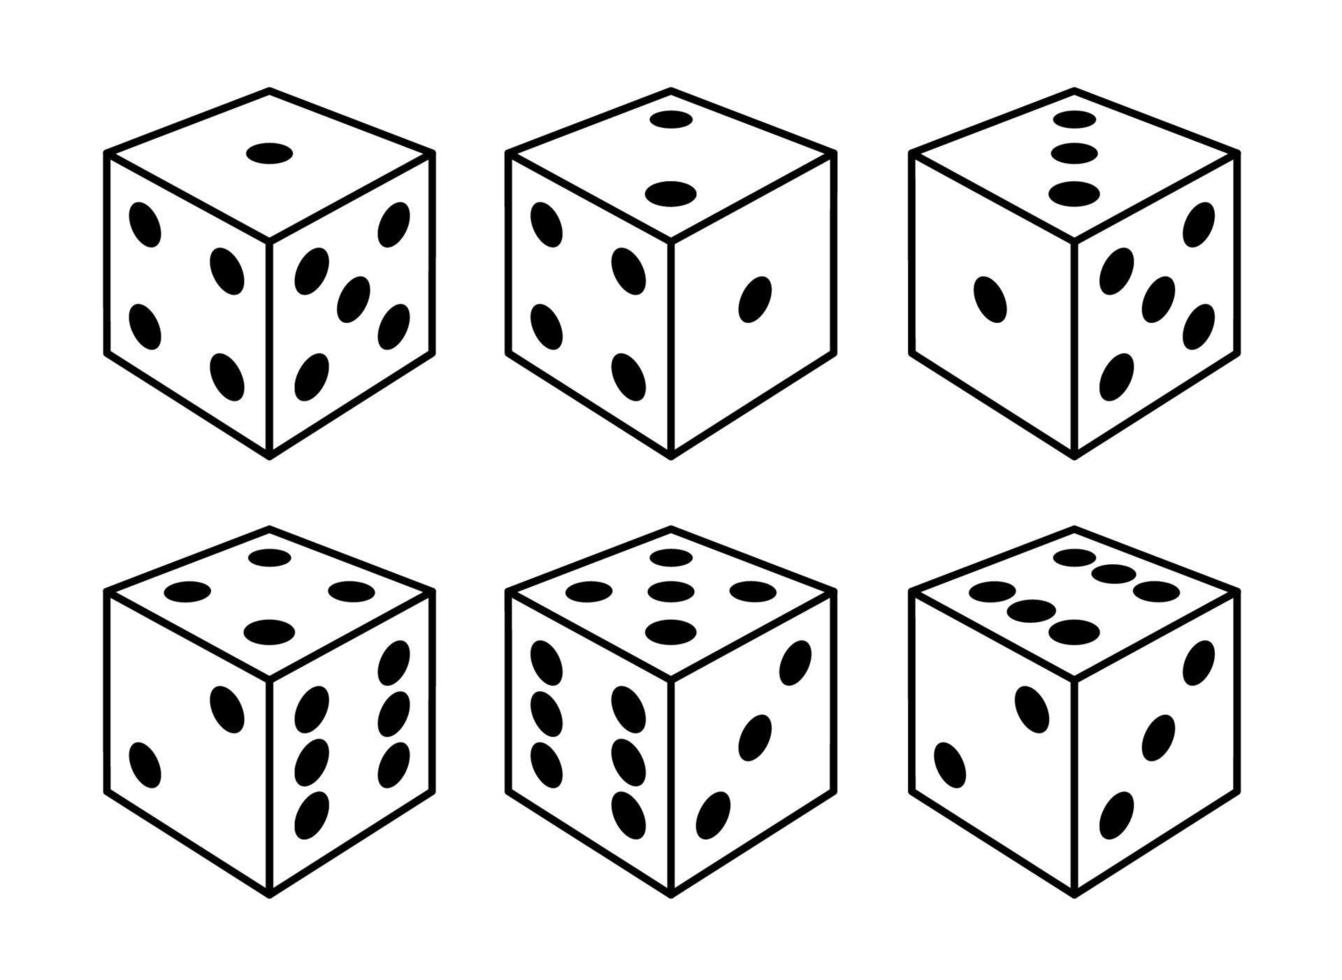 conjunto de dadinhos brancos com pontos pretos de diferentes lados vista isolada no branco. design para jogos de mesa ou de tabuleiro, jogos de azar e cassinos. ilustração vetorial. vetor